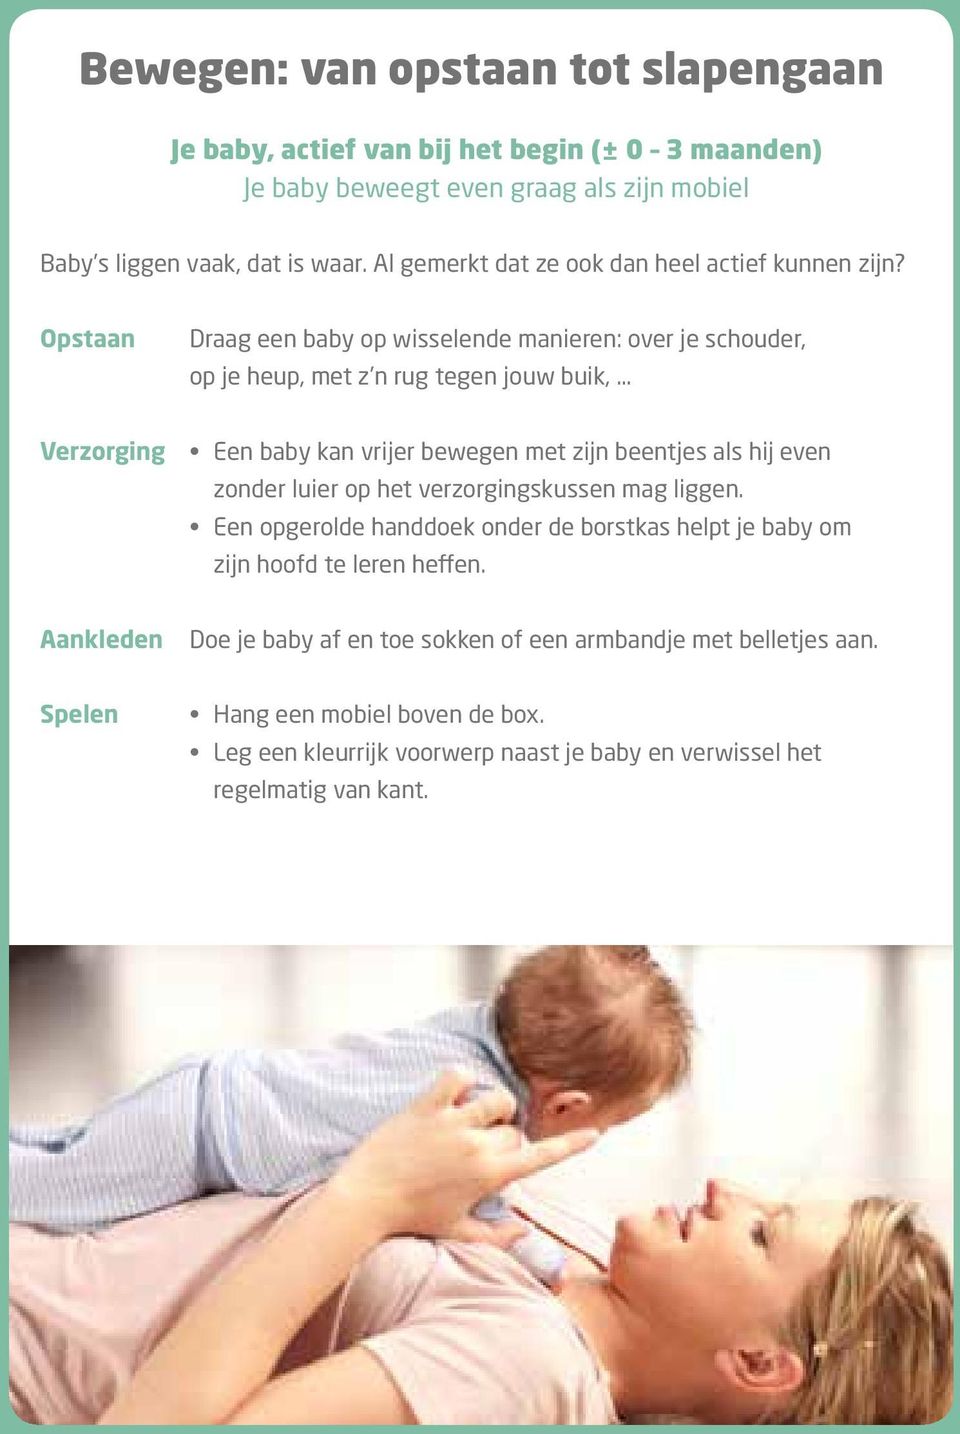 Opstaan Draag een baby op wisselende manieren: over je schouder, op je heup, met z n rug tegen jouw buik, Verzorging Een baby kan vrijer bewegen met zijn beentjes als hij even